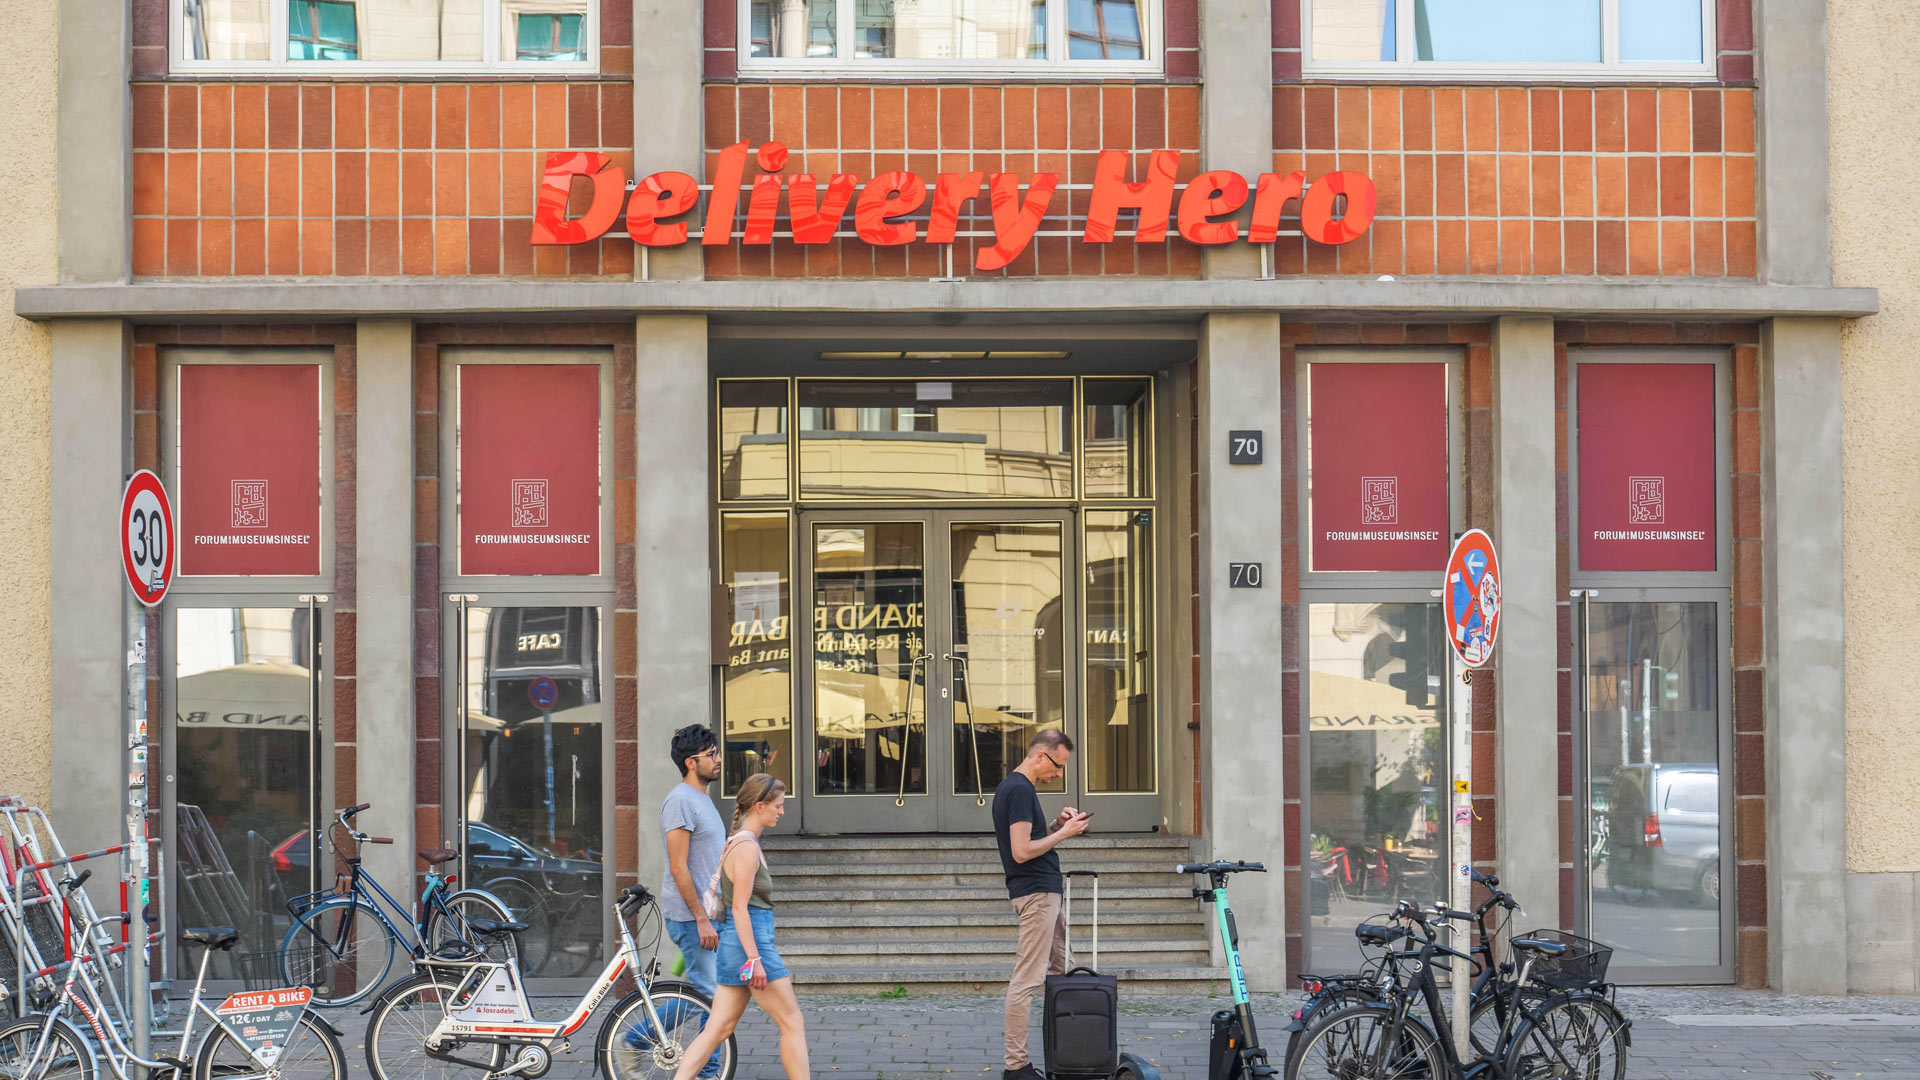 Delivery Hero Firmenzentrale in Berlin 2021 | picture alliance / Bildagentur-o